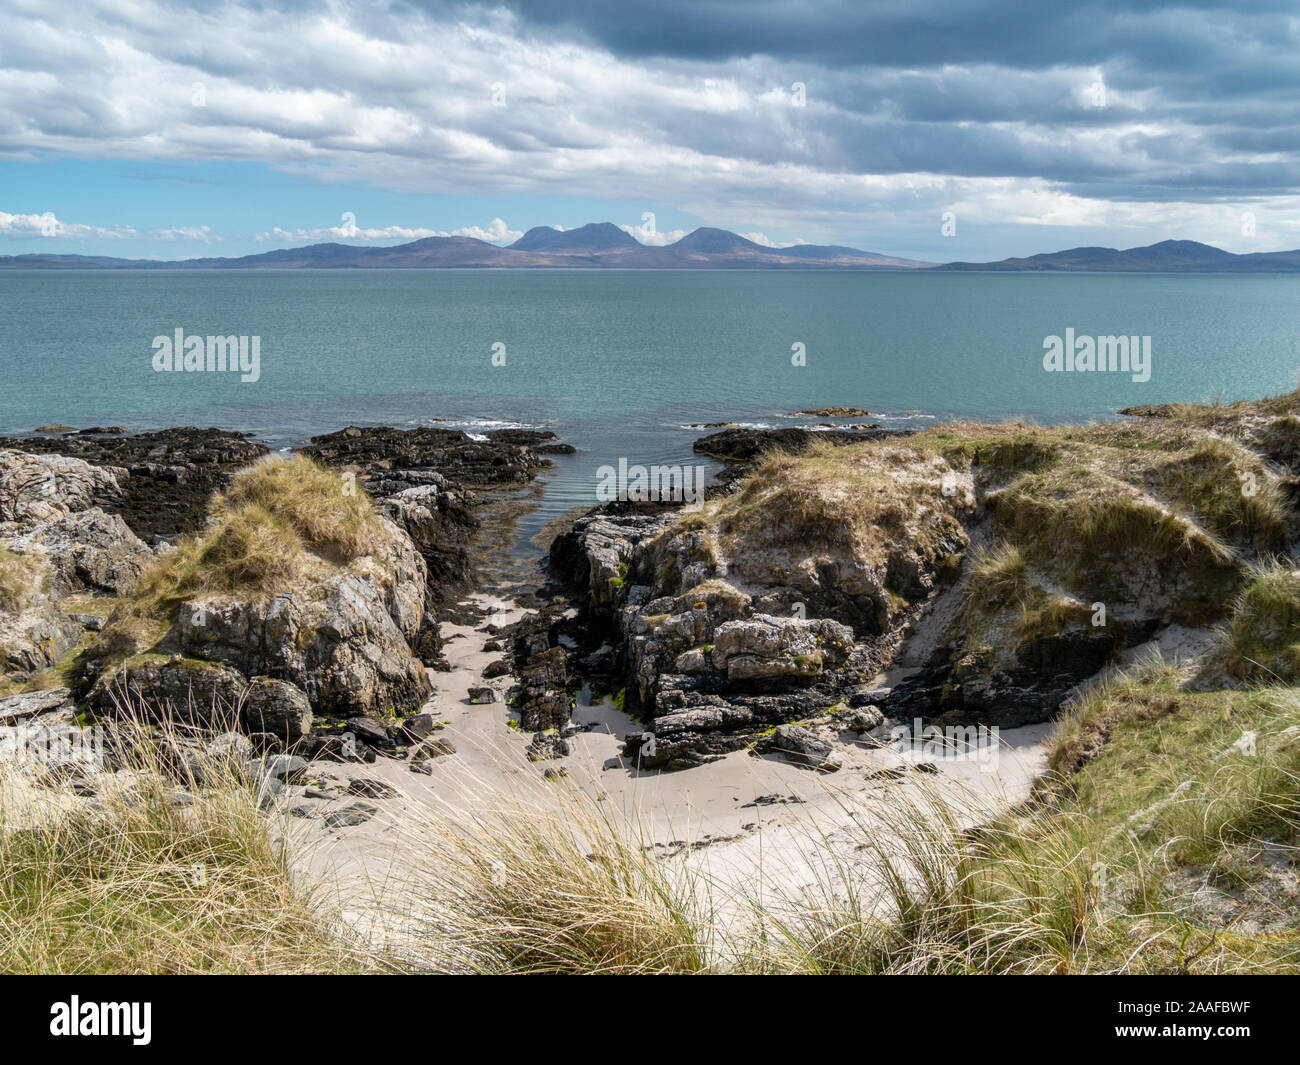 Una vista in lontananza l'Isle of Jura con le pappe del Giura all'orizzonte come si vede dall'Isola di Colonsay, Scotland, Regno Unito Foto Stock